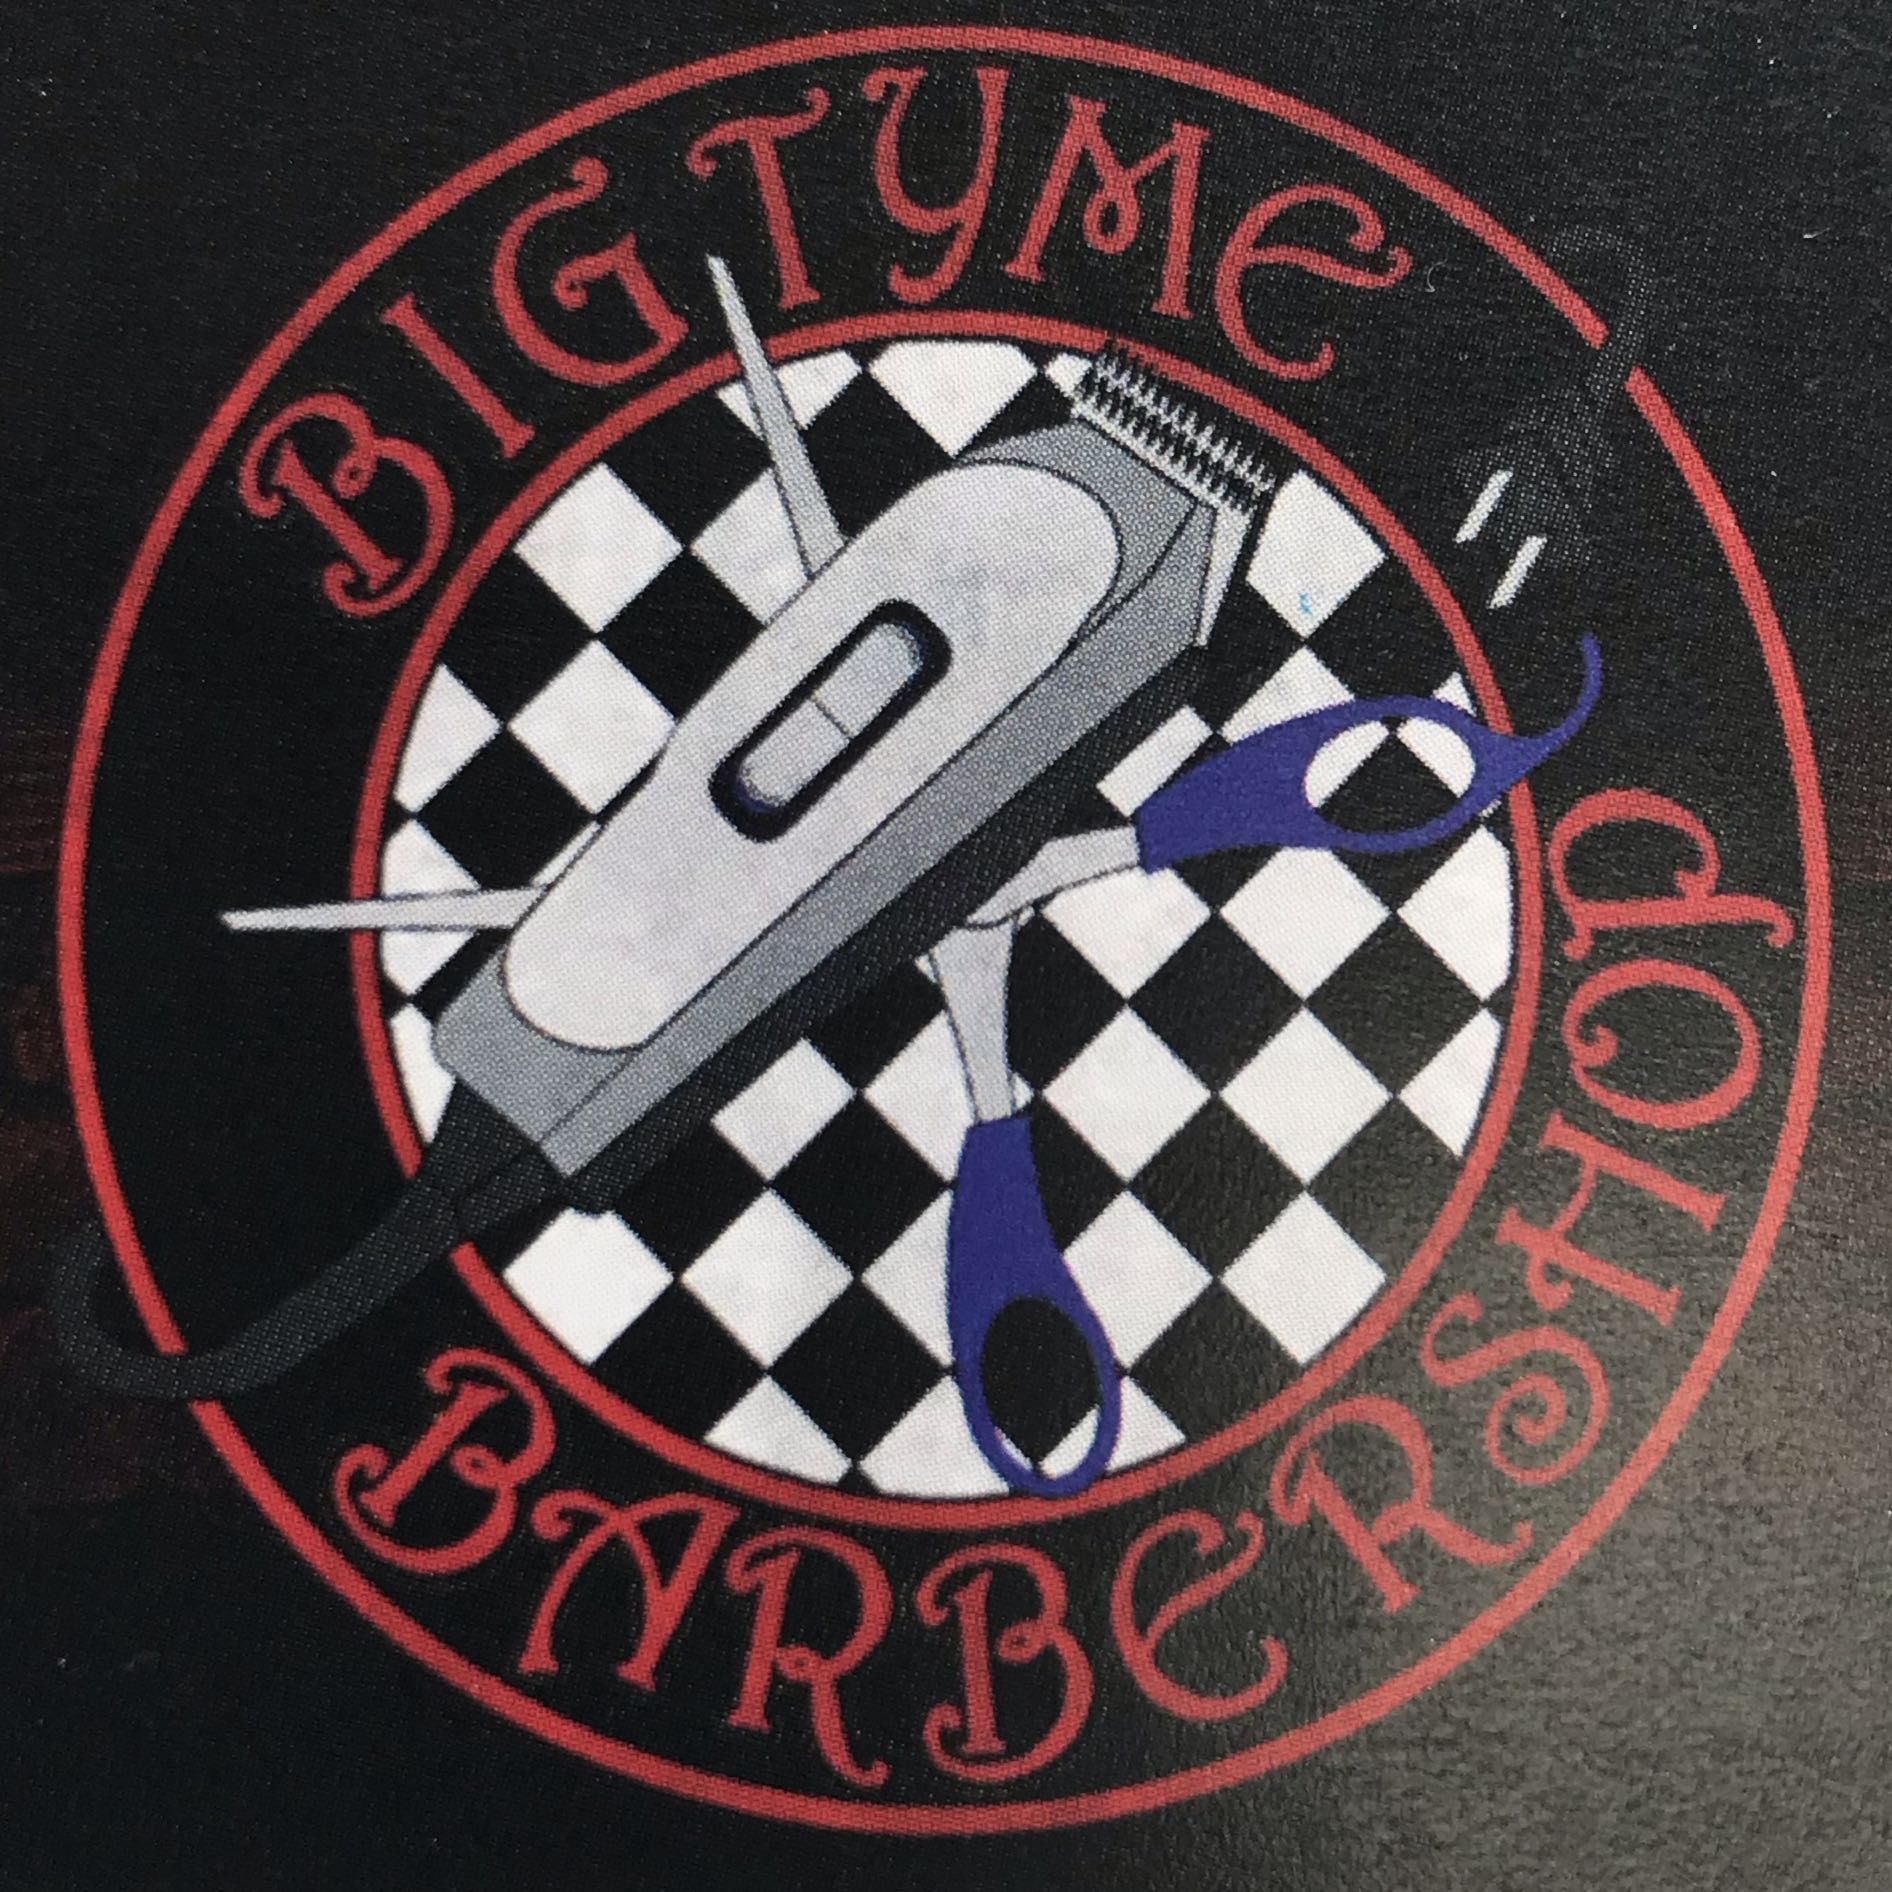 BigTyme barbershop, 10759 Magnolia Ave, Riverside, 92505